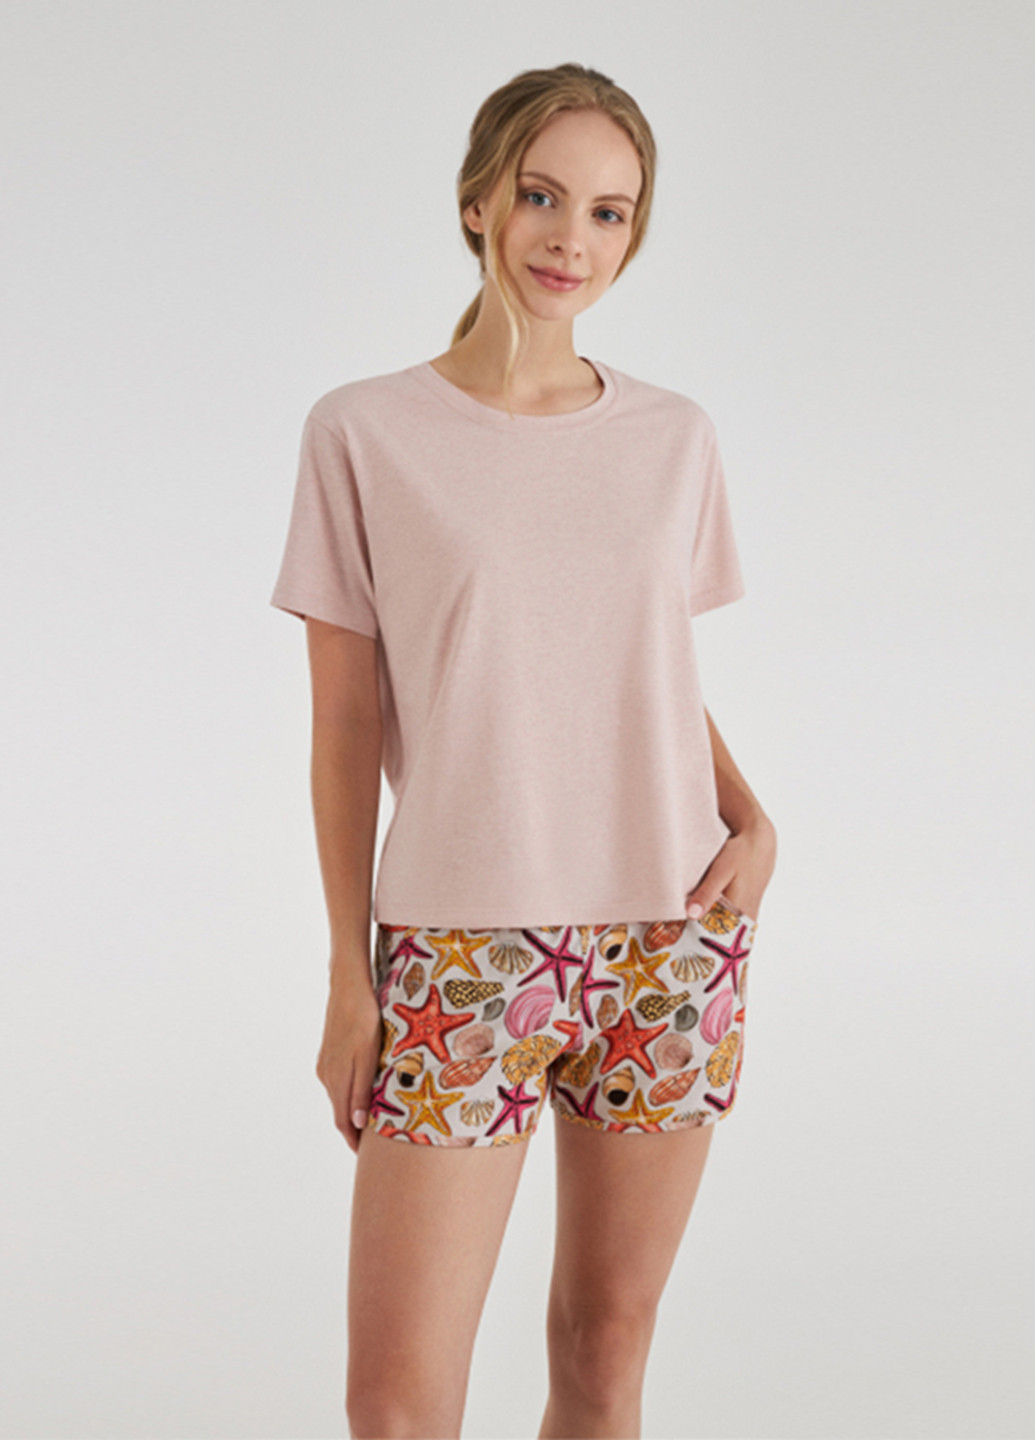 Бежевая всесезон пижама (футболка, шорты) футболка + шорты Ellen